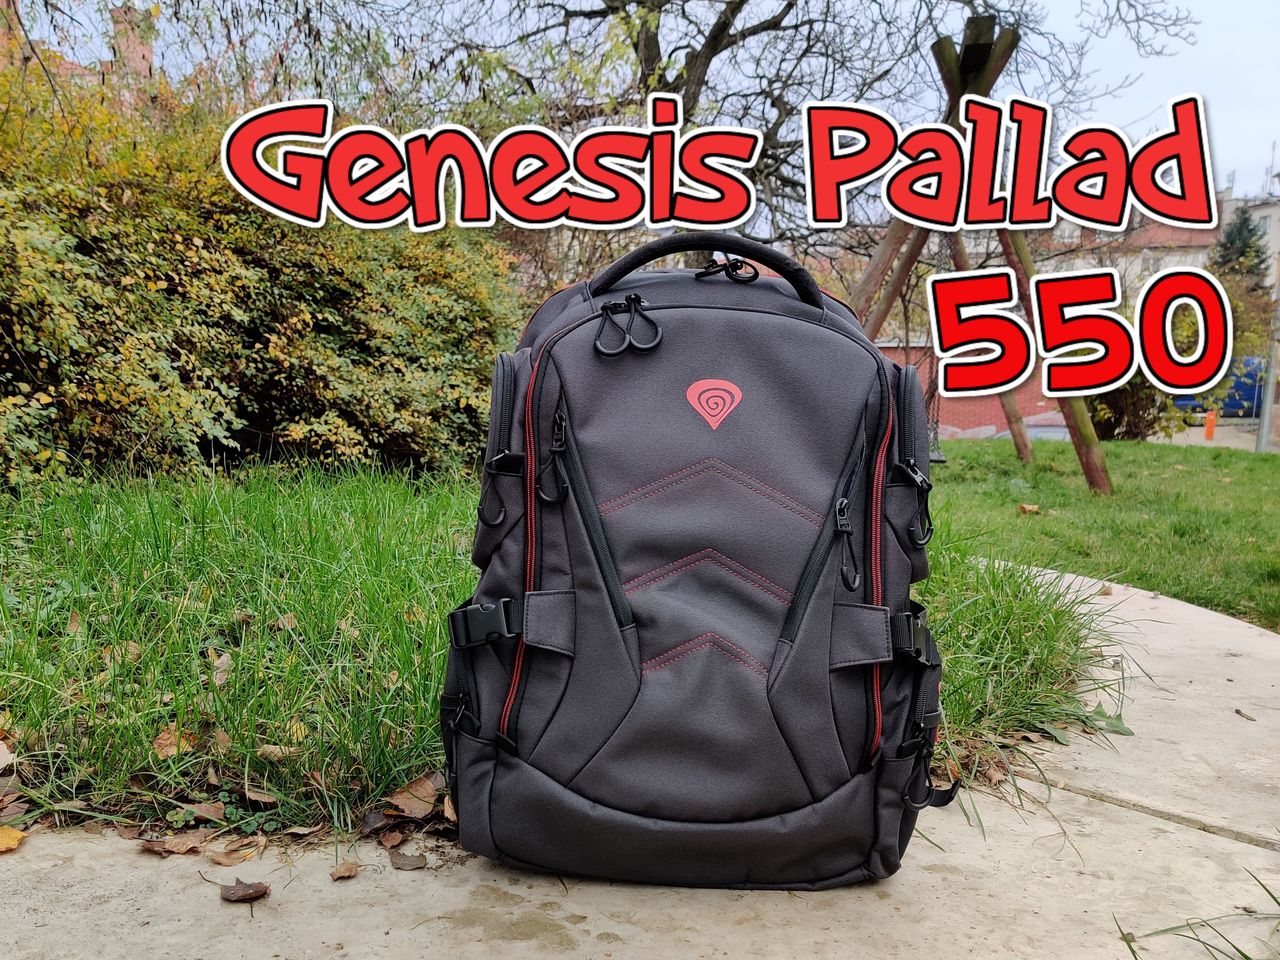 Genesis Pallad 550 - nowoczesny wygląd, zwarta konstrukcja i więcej kieszonek w plecaku dla gracza